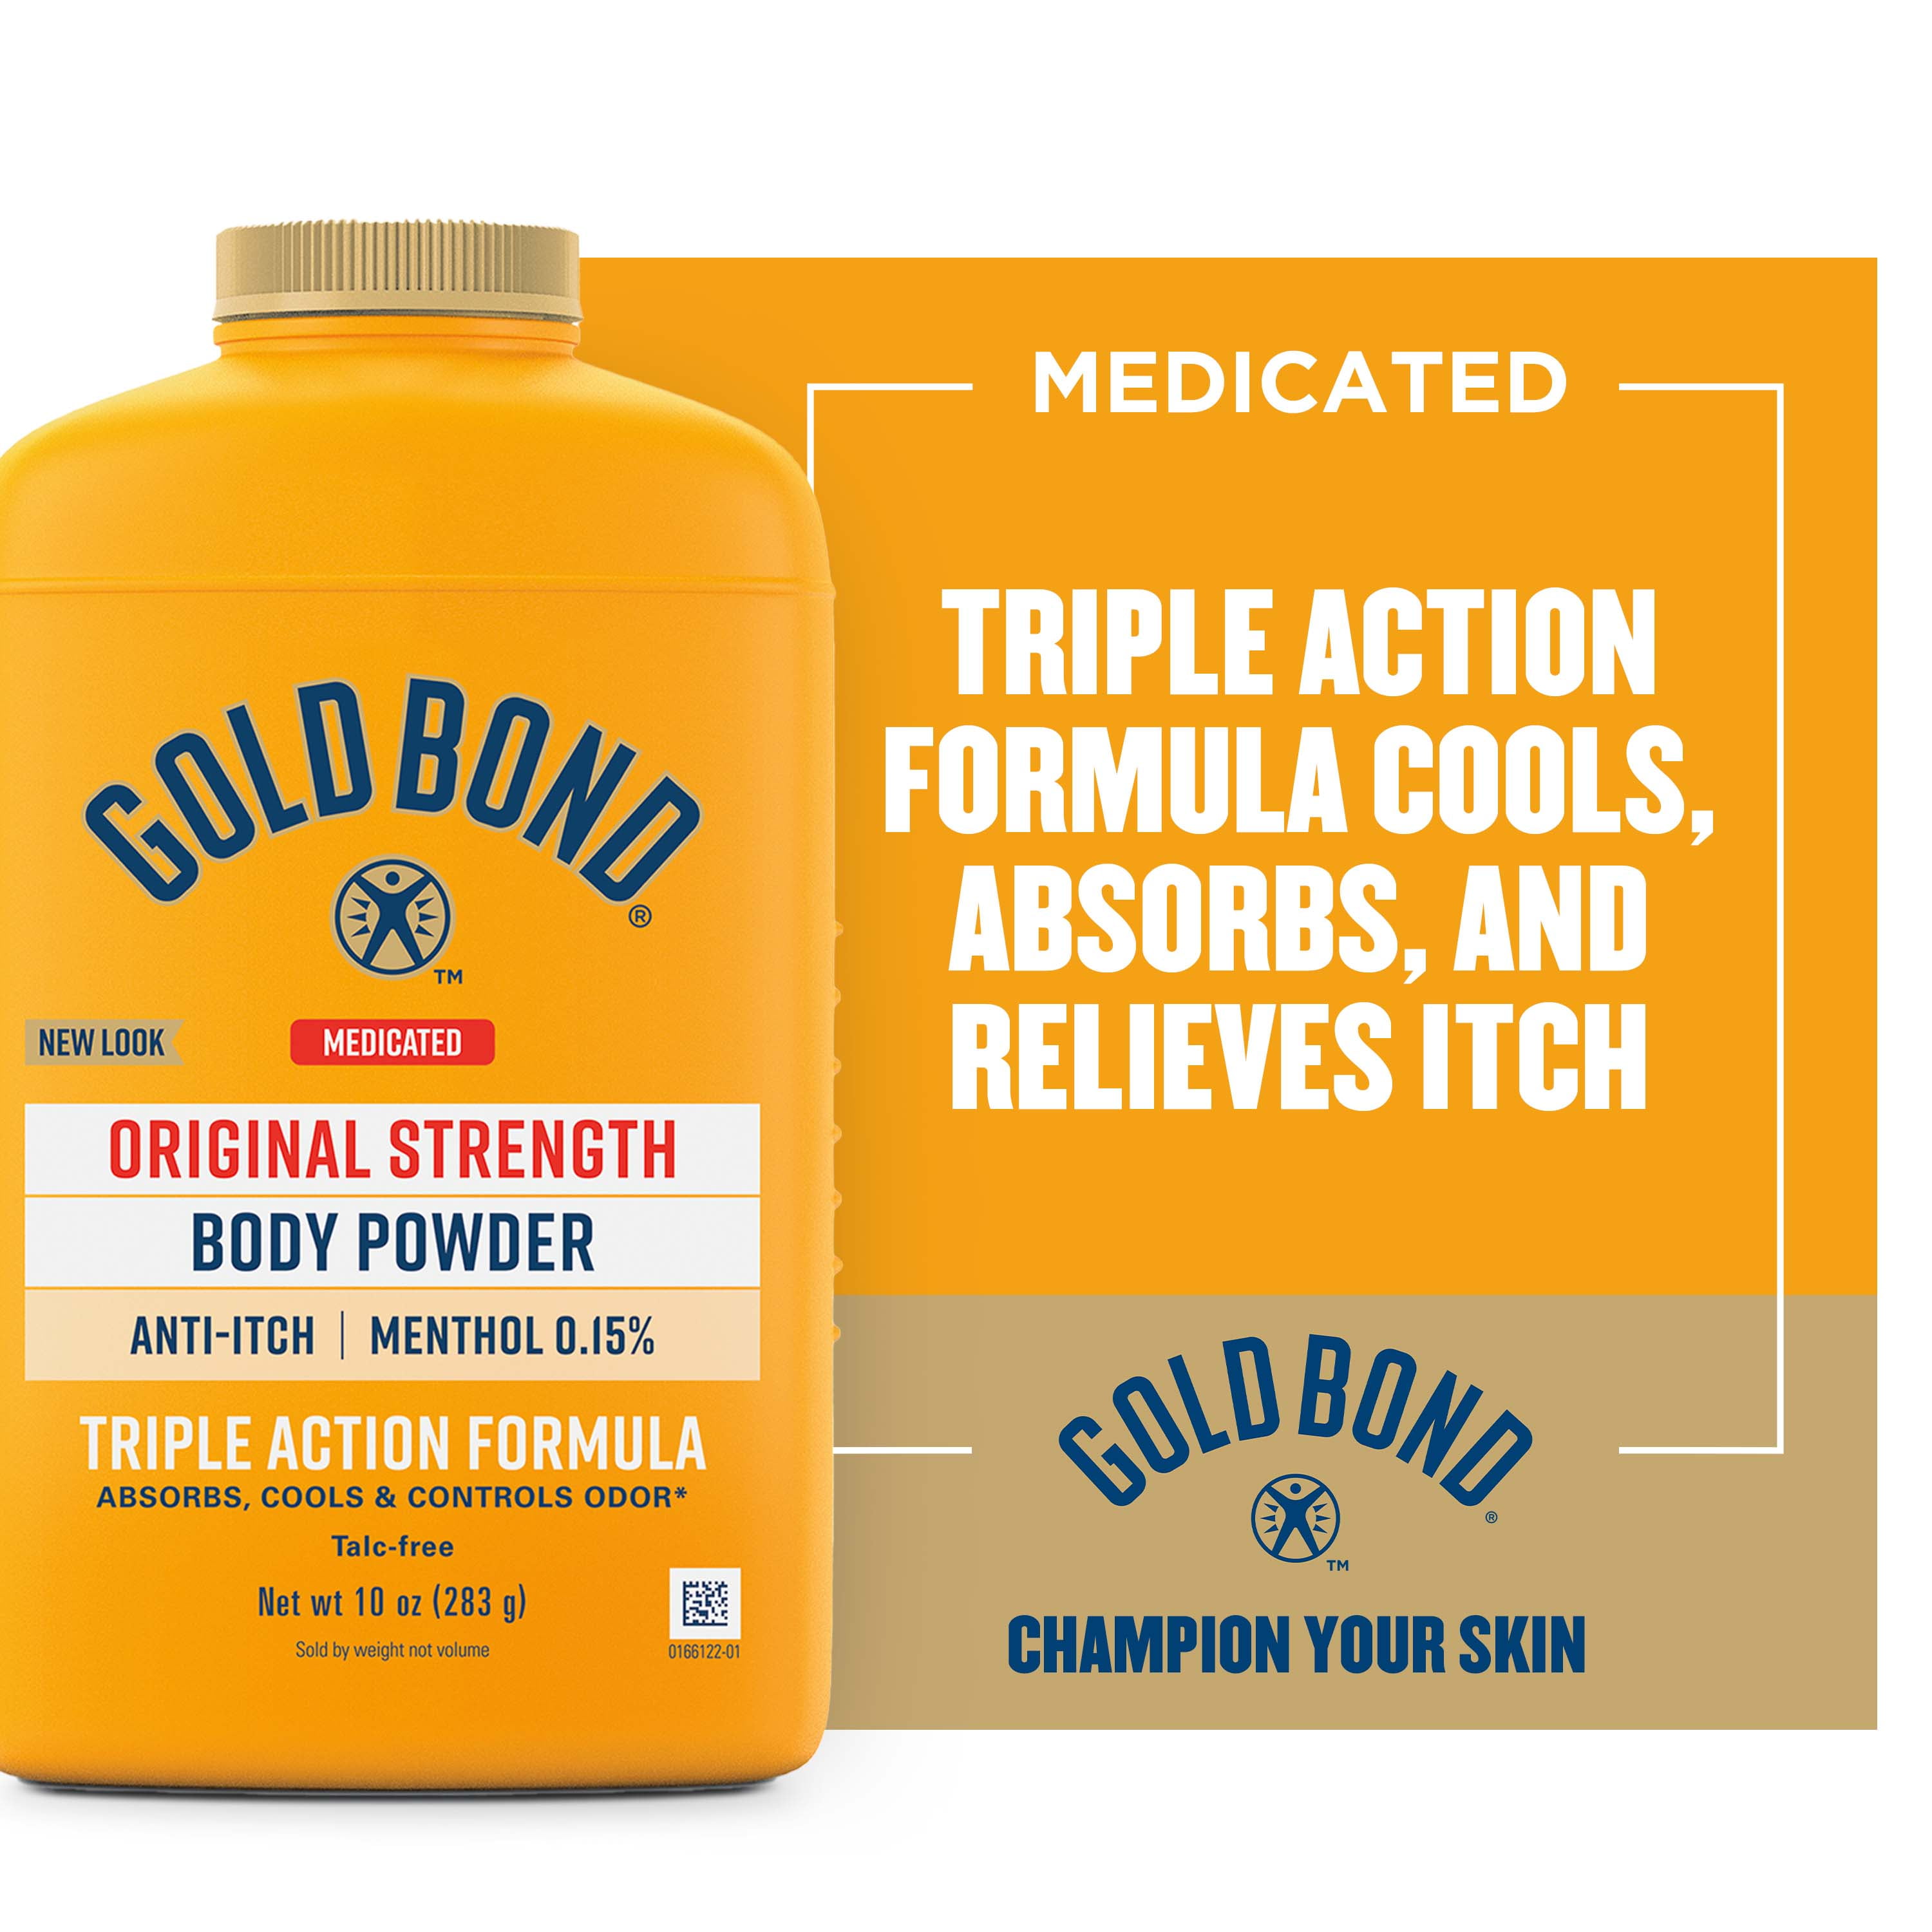 Gold Bond Medicated Original Strength Body Powder, 10 oz., Talc-Free